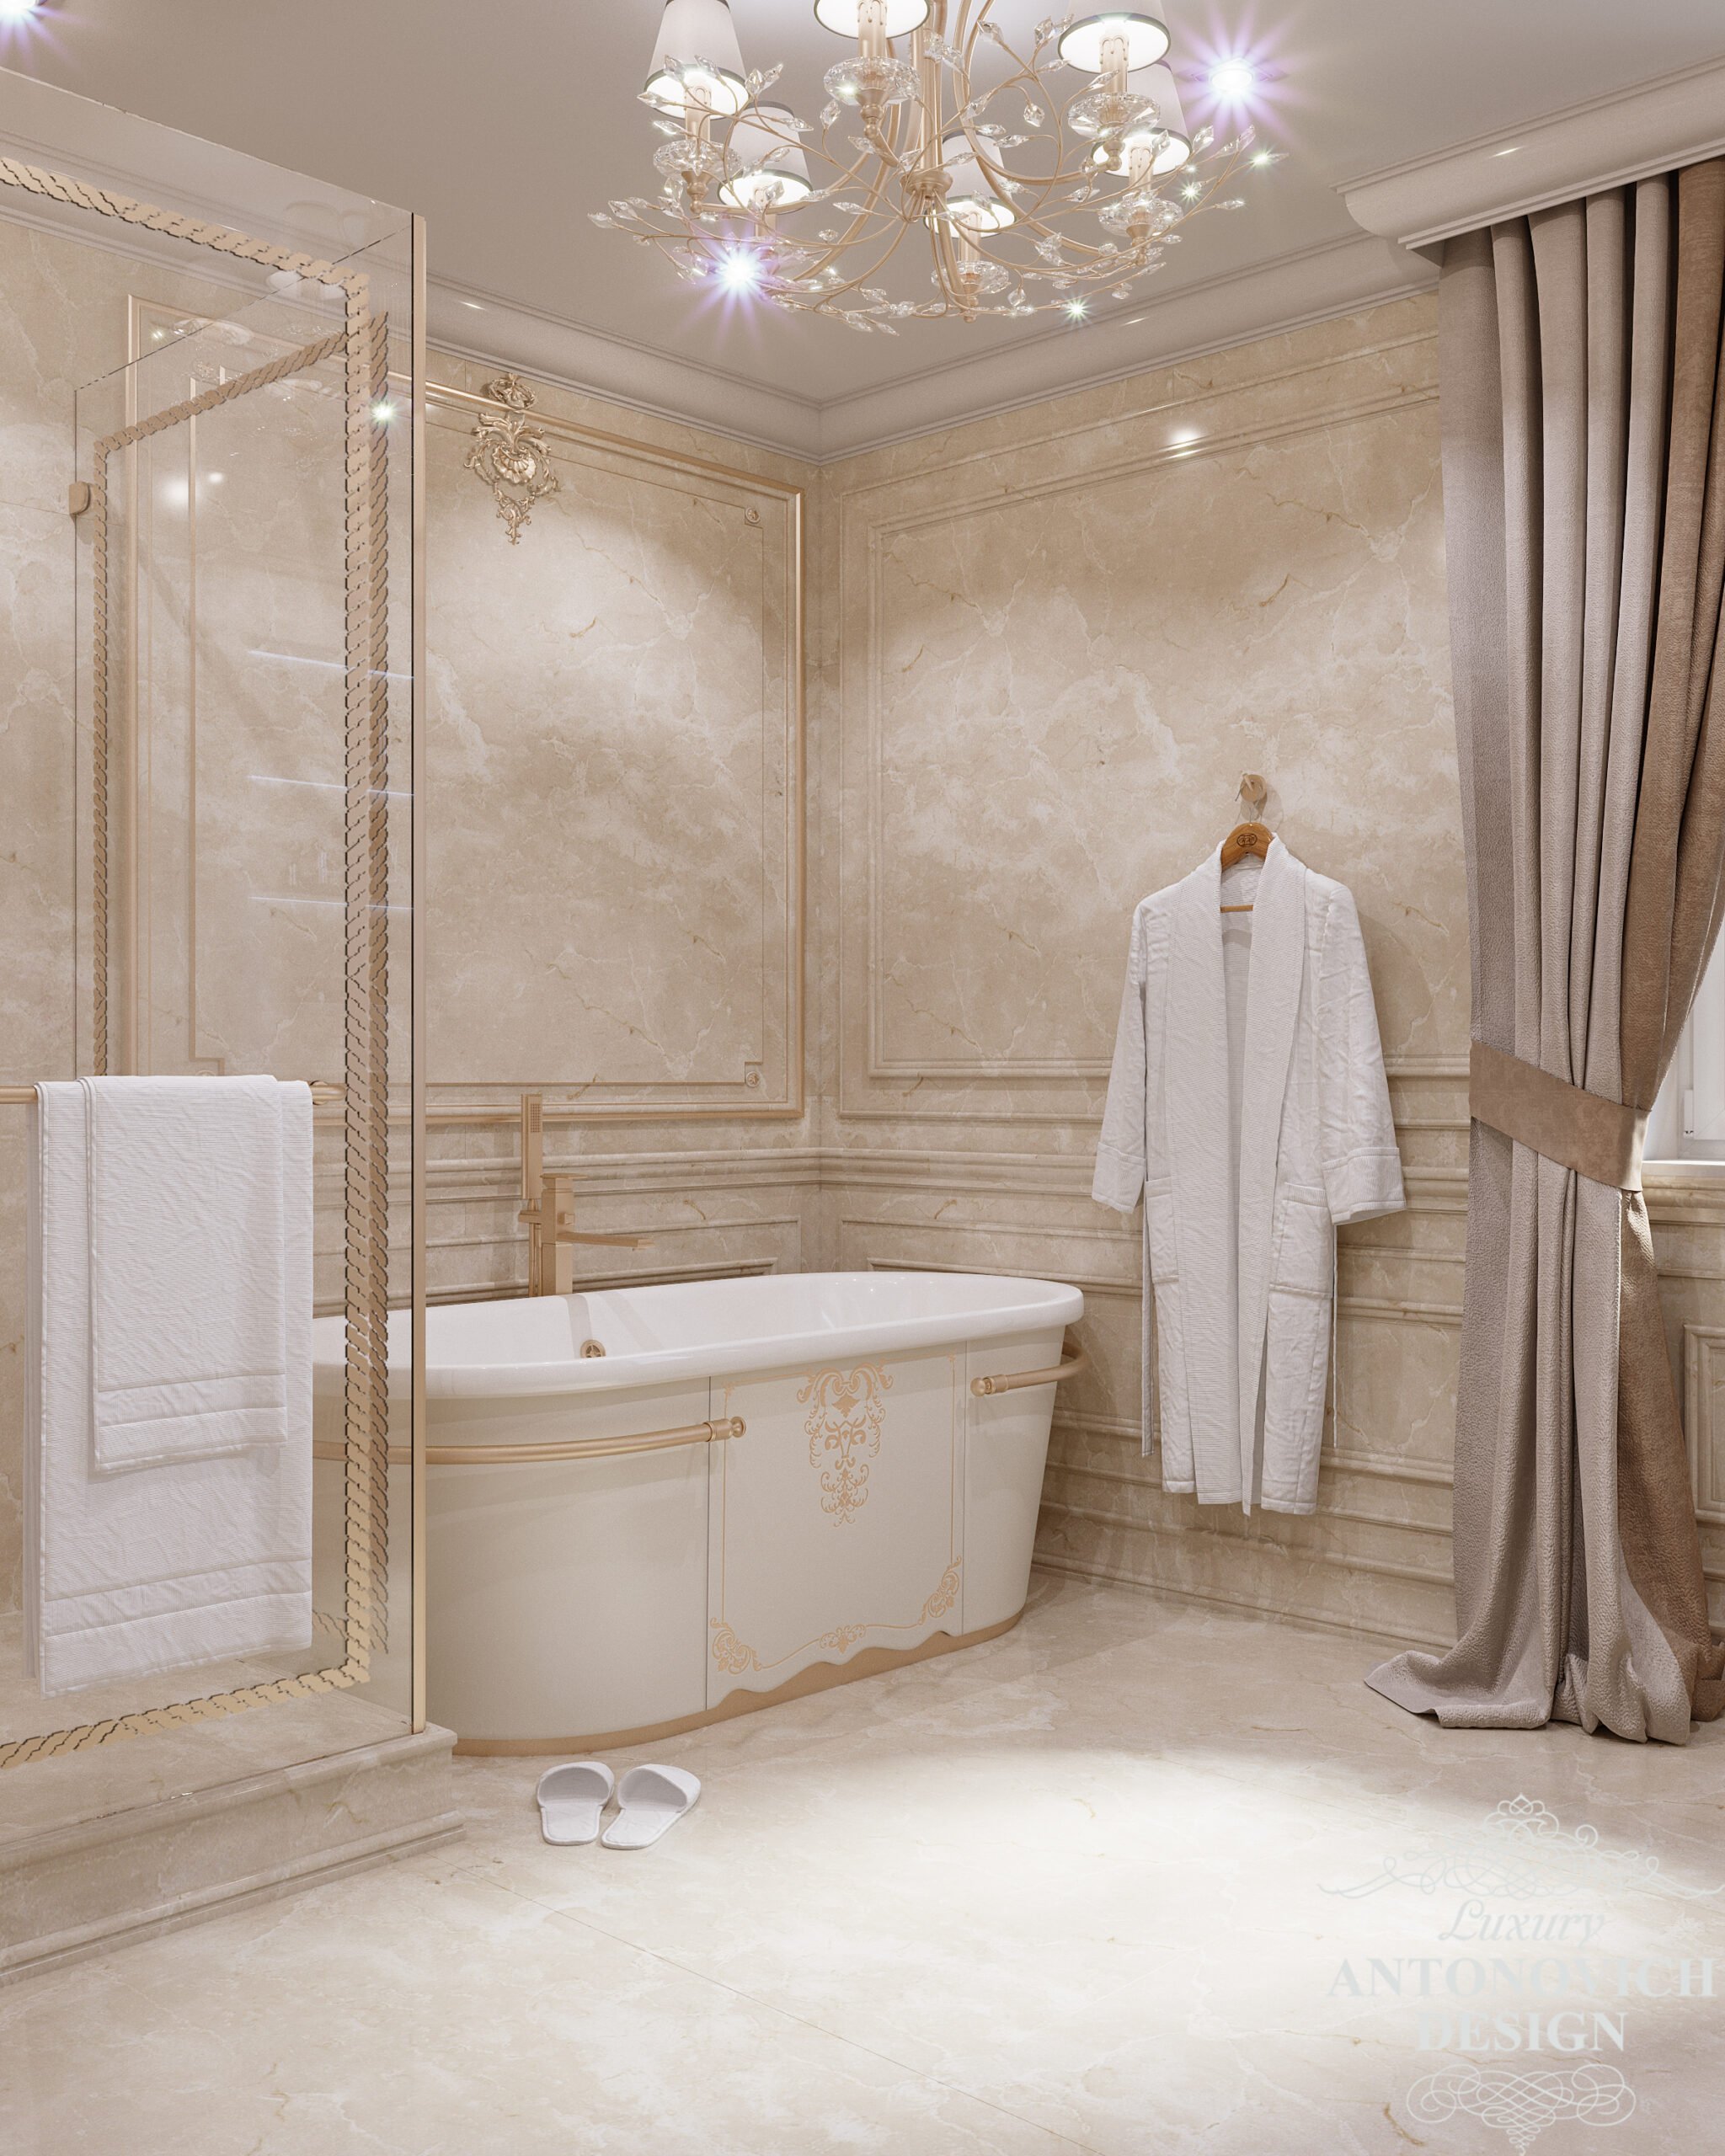 Витончена класична ванна в світлих відтінках з обробкою з дорогих матеріалів в дизайні приватного будинку